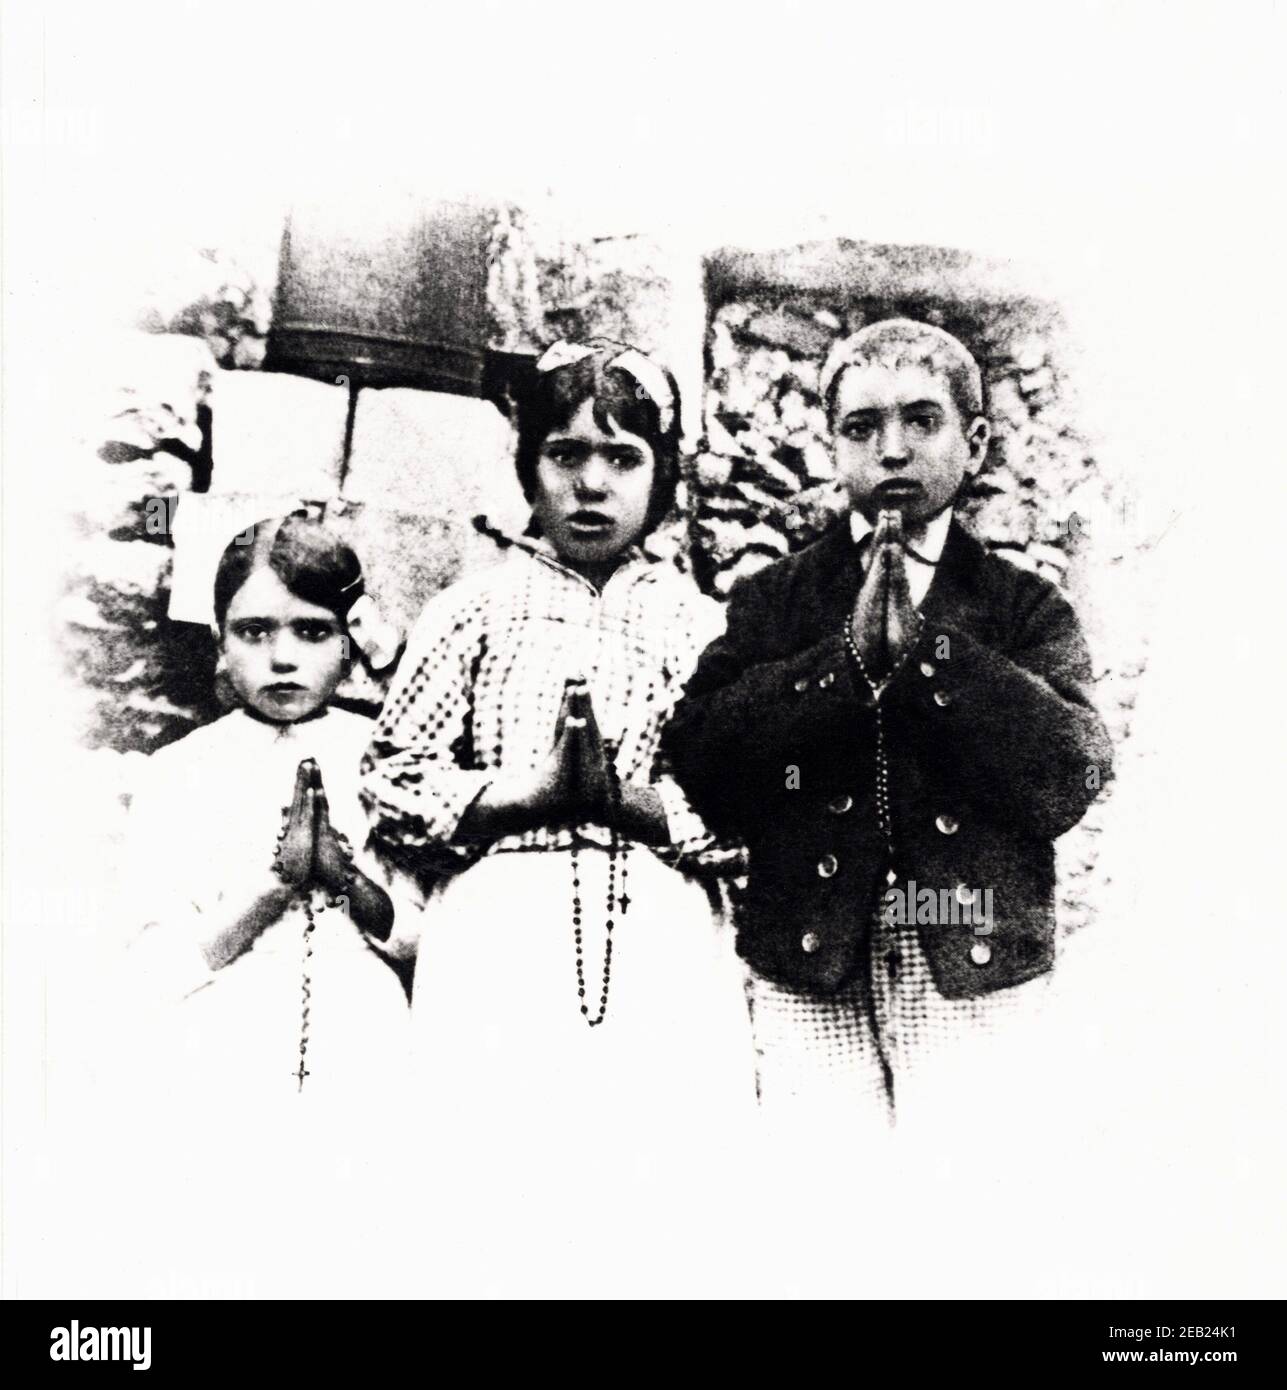 13 juillet 1917 , Fatima , Portugal : JACINTA MARTO ( 1910 - 1920 ) , FRANCISCO MARTO ( 1908 - 1919 ) e LUCIA DOS SANTOS (née le 22 mars 1907 ) A Cova da Iria au moment de la première apparition de notre Dame - MIRACOLO DI FATIMA   PORTOGALLO - RELIGIONE CATTOLICA - PRODIGI - miracoli - mistero - sovrannaturale - apparaizione mariana - apparaizioni mariane - MADONNA - Nostra Signora - Vierge Marie - MIRACLE - MISTERY miracles - RELIGION CATHOLIQUE - SANTO - SANTI - Saint - Saints - VISIONE - VISIONI - VISION - VISIONS - APPARITION - apparitions - contadino - contadini - fermier - fermier - portrait Banque D'Images